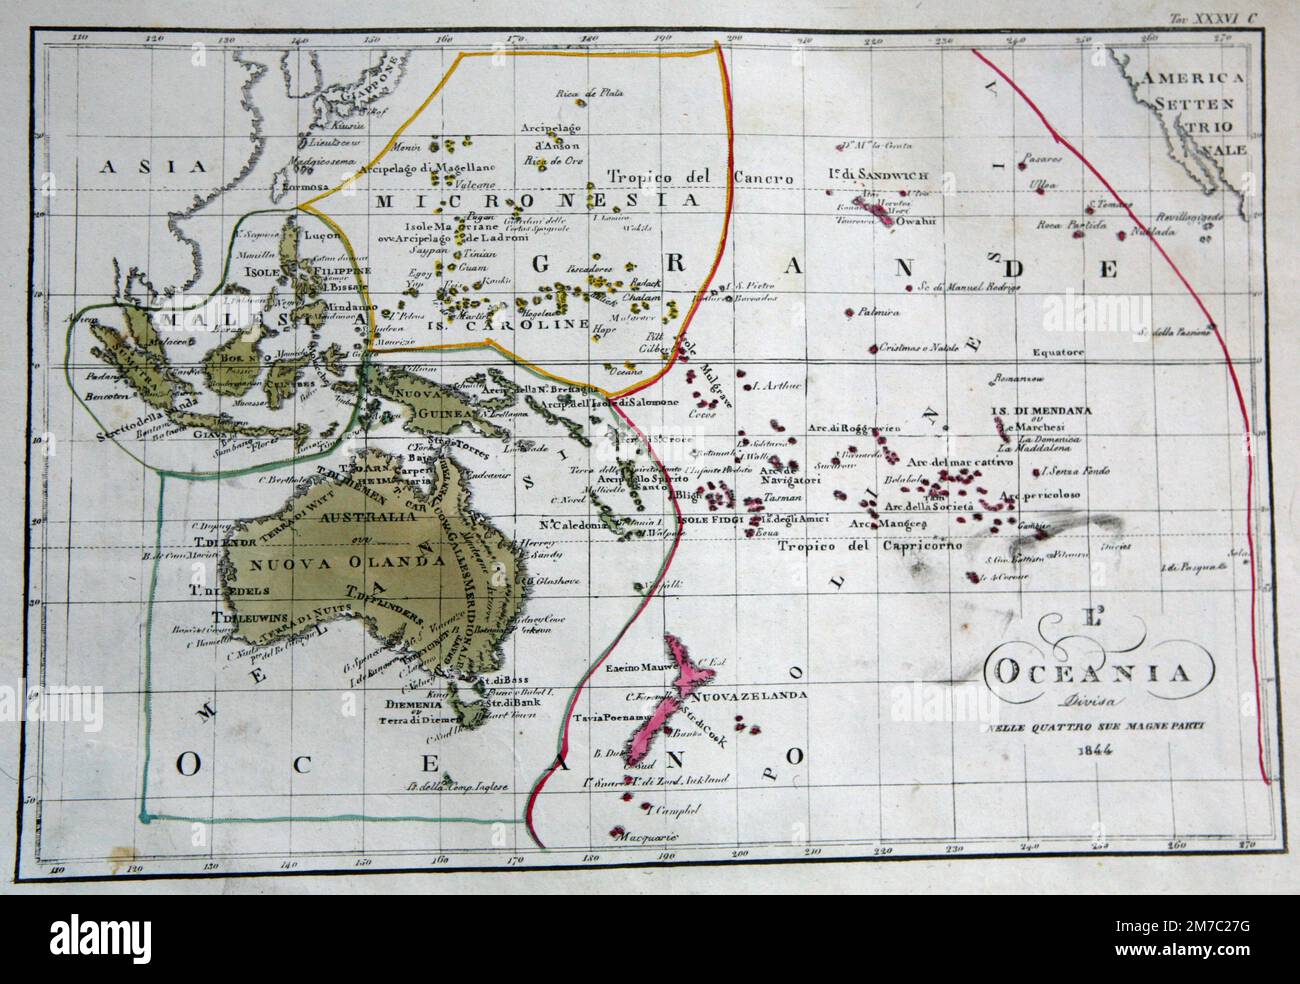 Karte von Ozeanien, unterteilt in vier große Teile, vom Marmocchi Atlas, Florenz, Italien 1844 Stockfoto